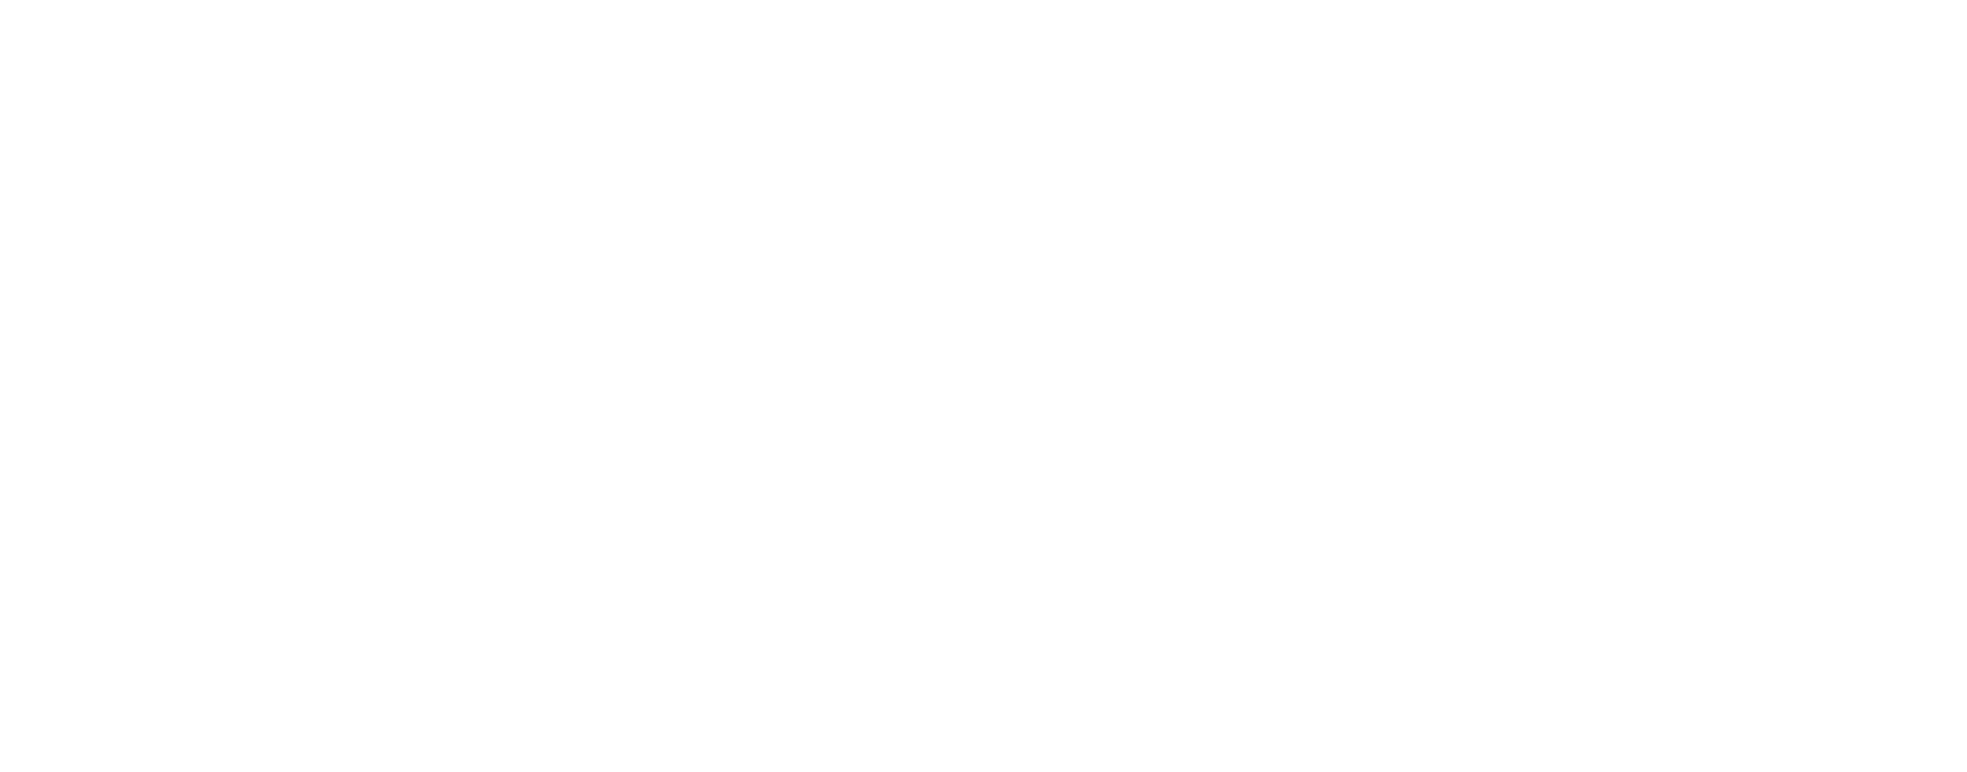 C# Starter Kit with Tim Corey